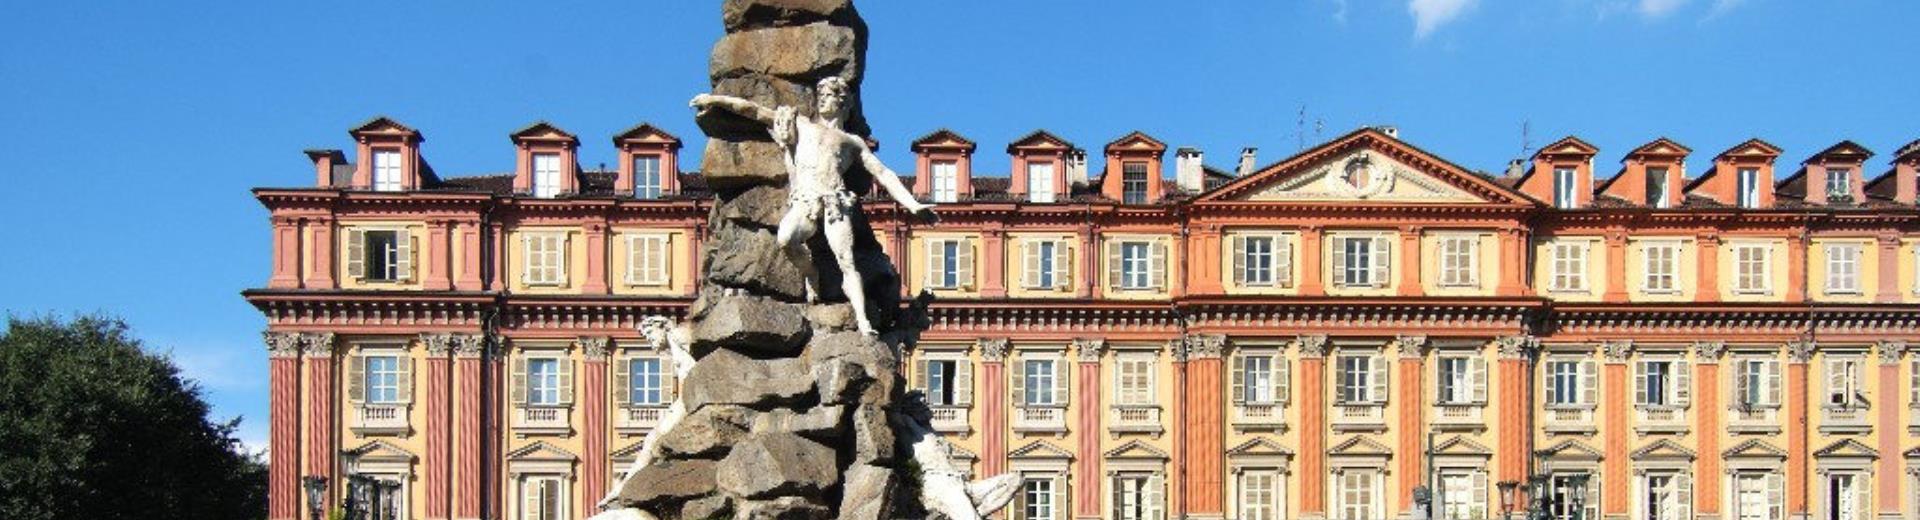 Entdecken Sie mit dem Best Western Plus Hotel Le Rondini den Charme von Turin, der Stadt der Magie. Ein besonderes Angebot, speziell für Sie erstellt.